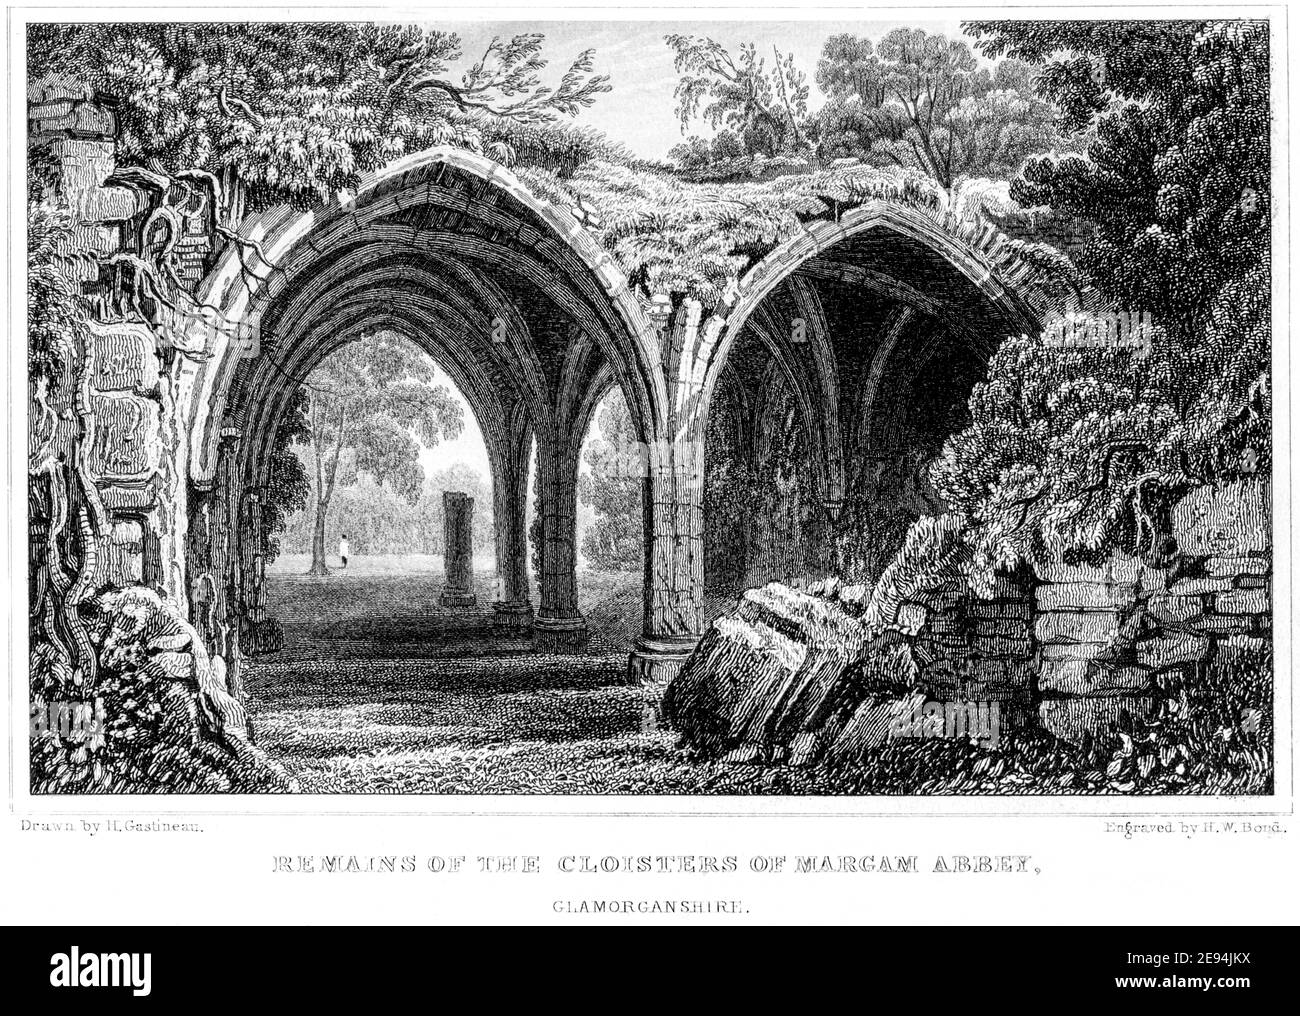 Ein Stich der Überreste der Klöster von Margam Abbey, Glamorganshire, gescannt in hoher Auflösung aus einem Buch im Jahr 1854 veröffentlicht. Stockfoto